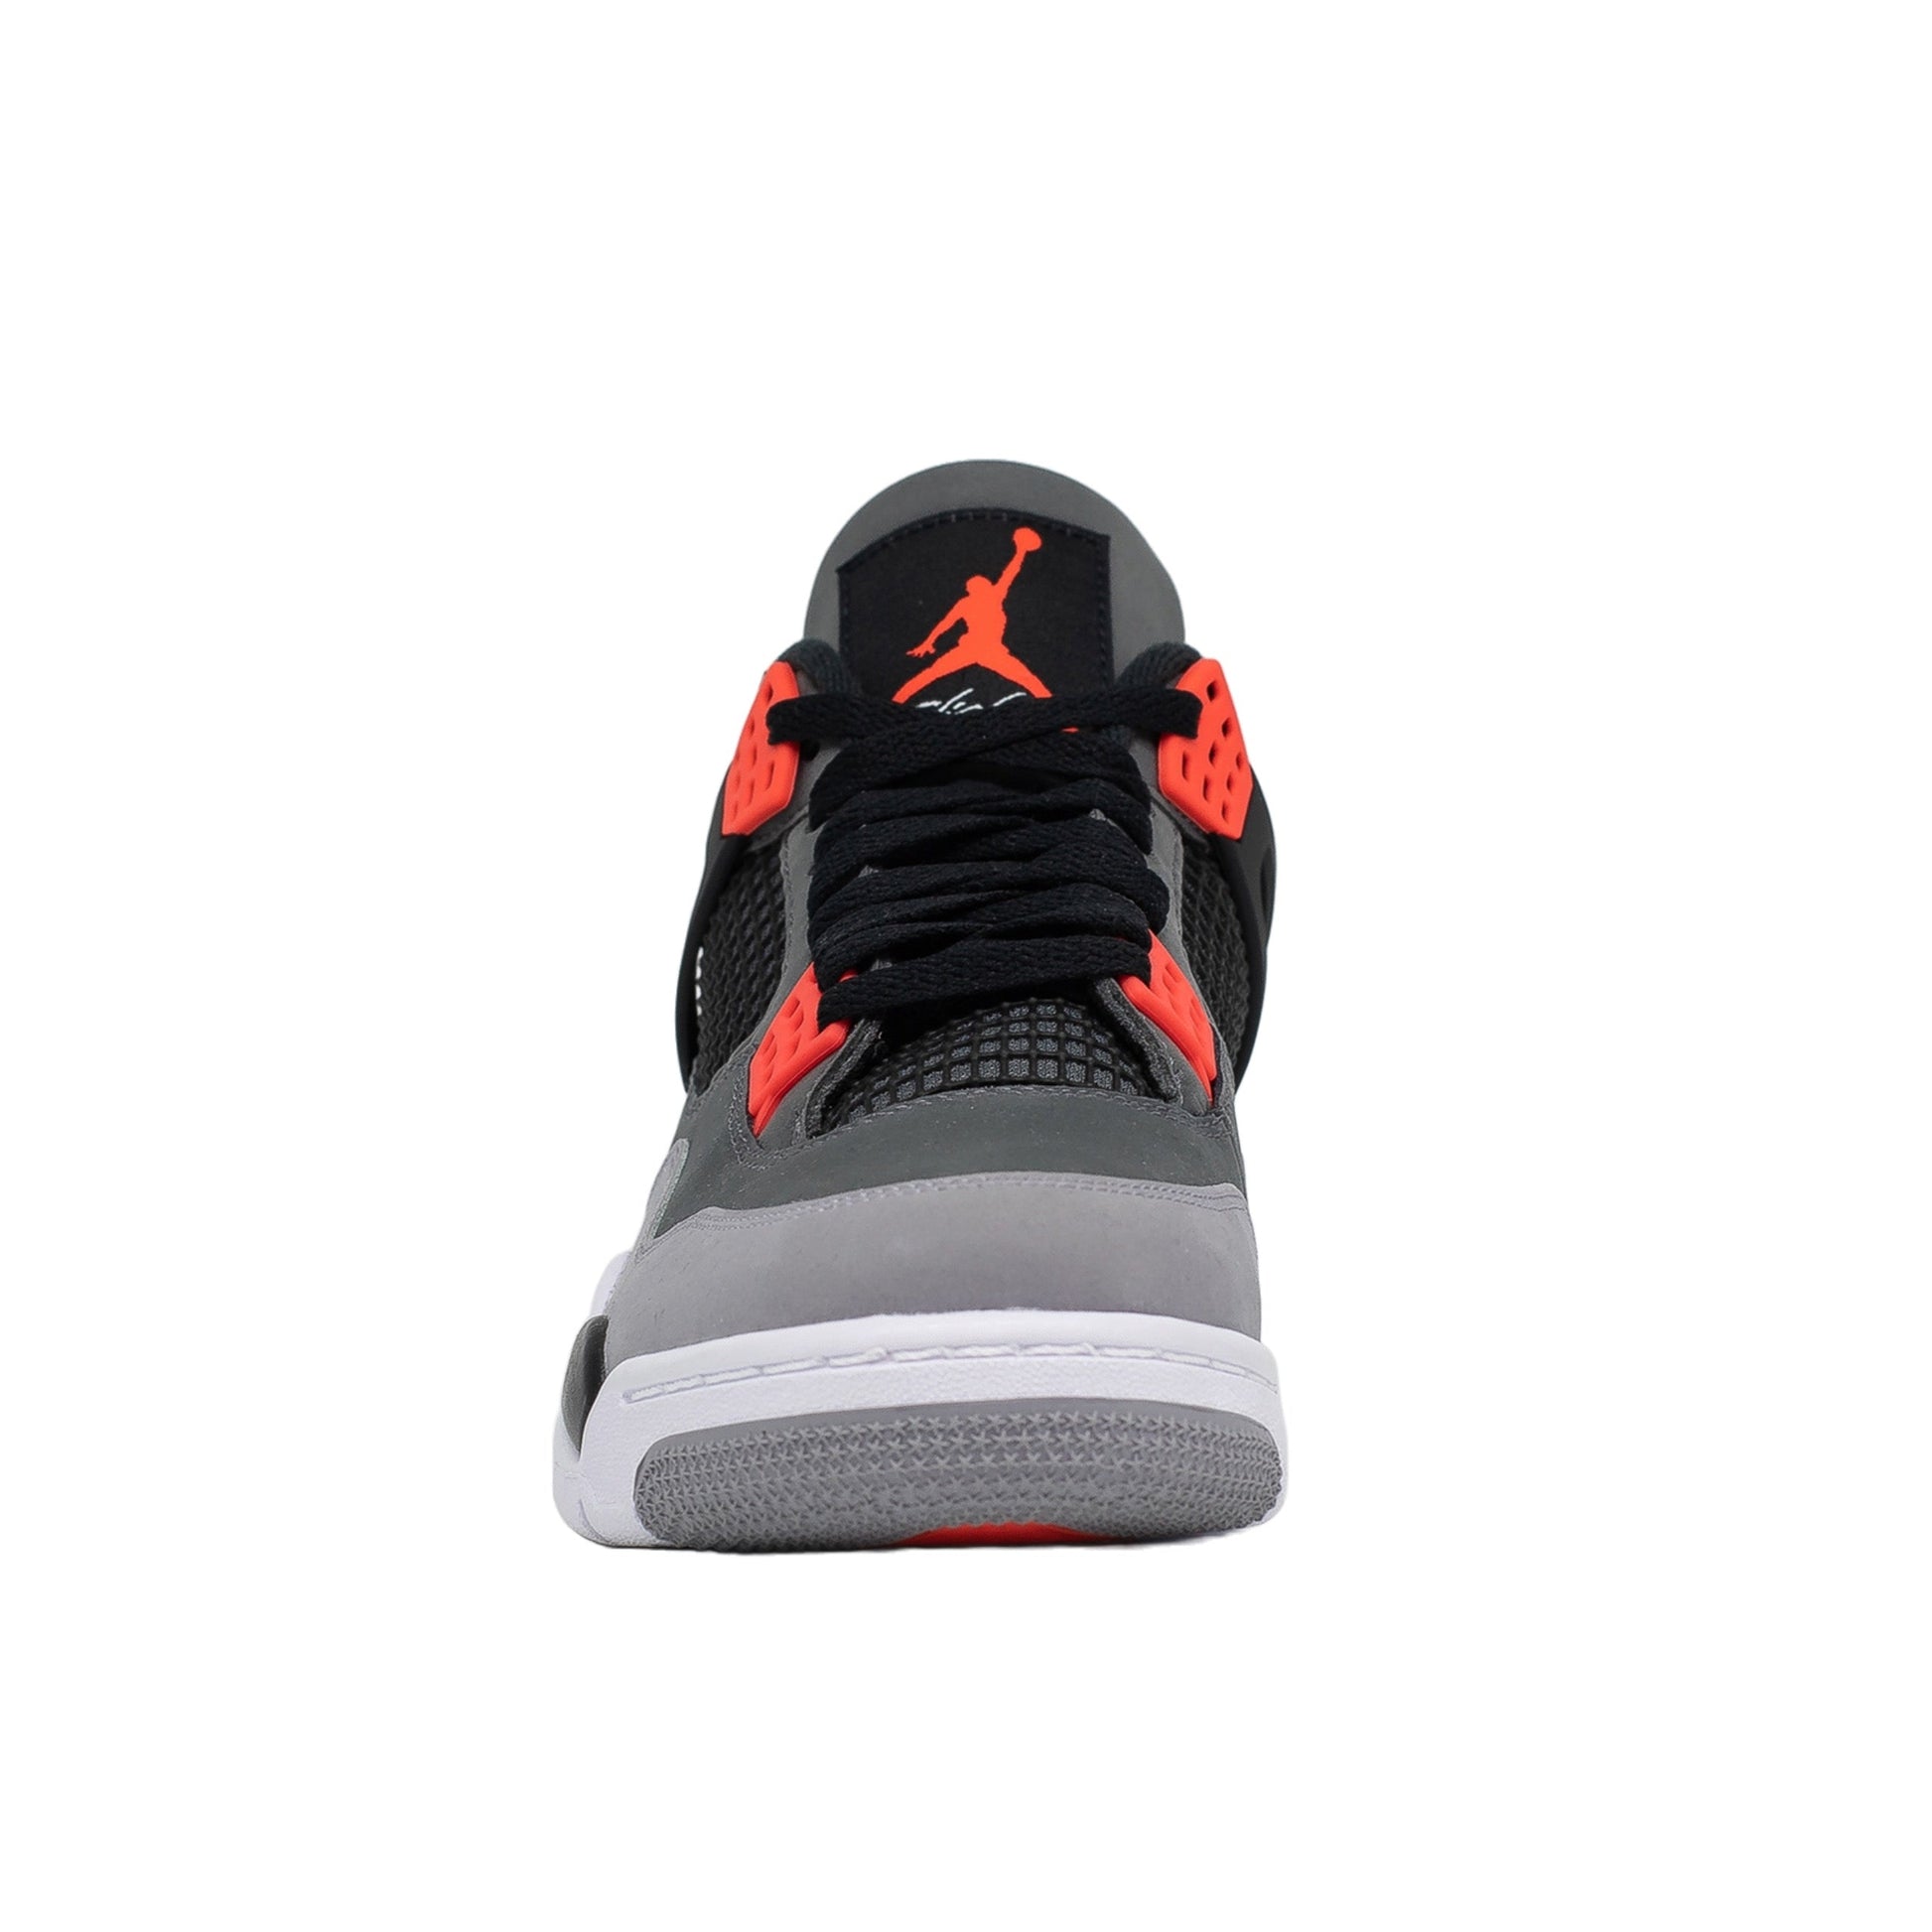 Air Jordan 4, Infrared